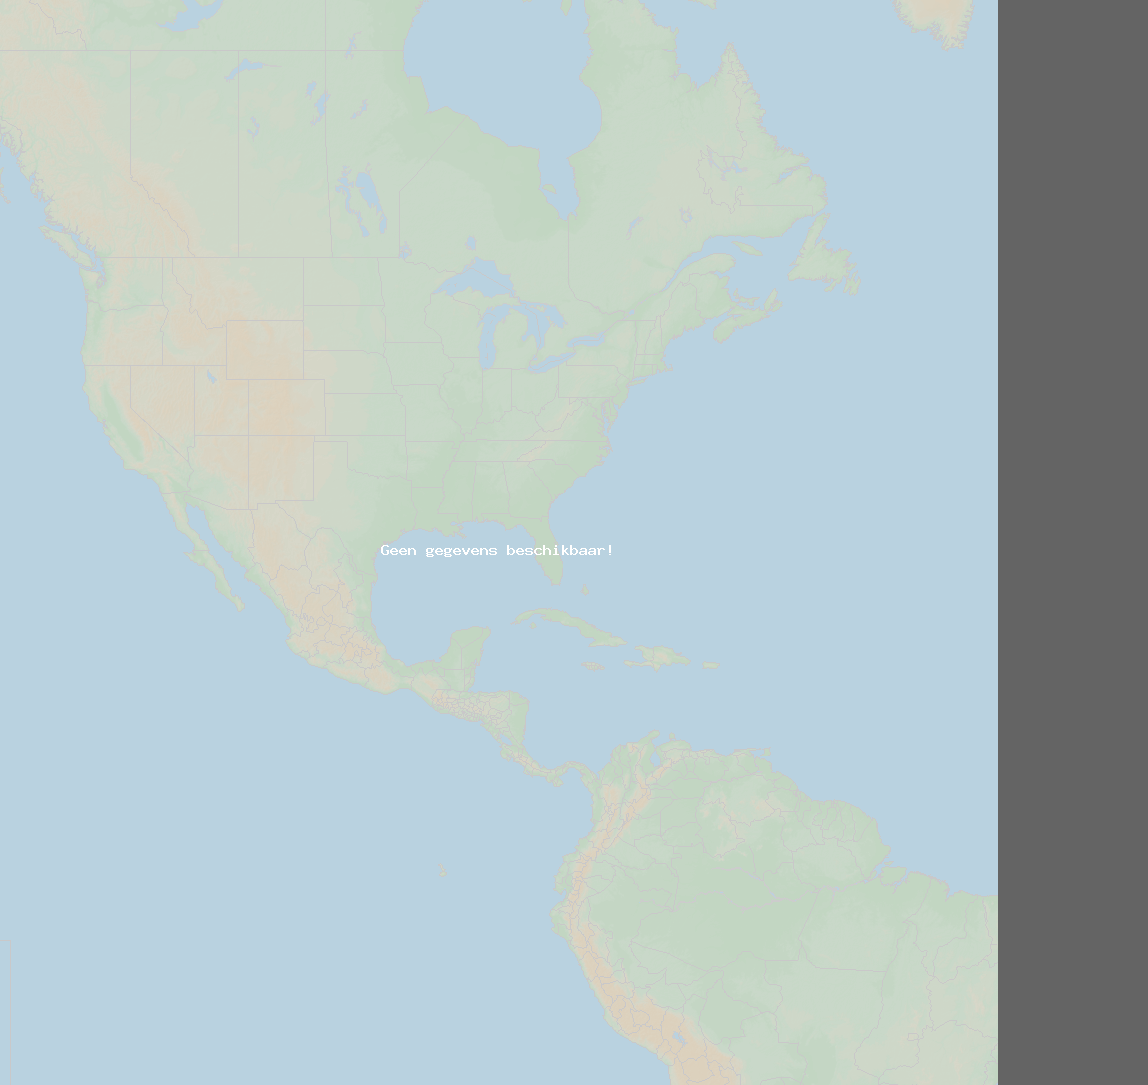 Inslagverhouding (Station Kingsport (Blue)) North America 2021 november